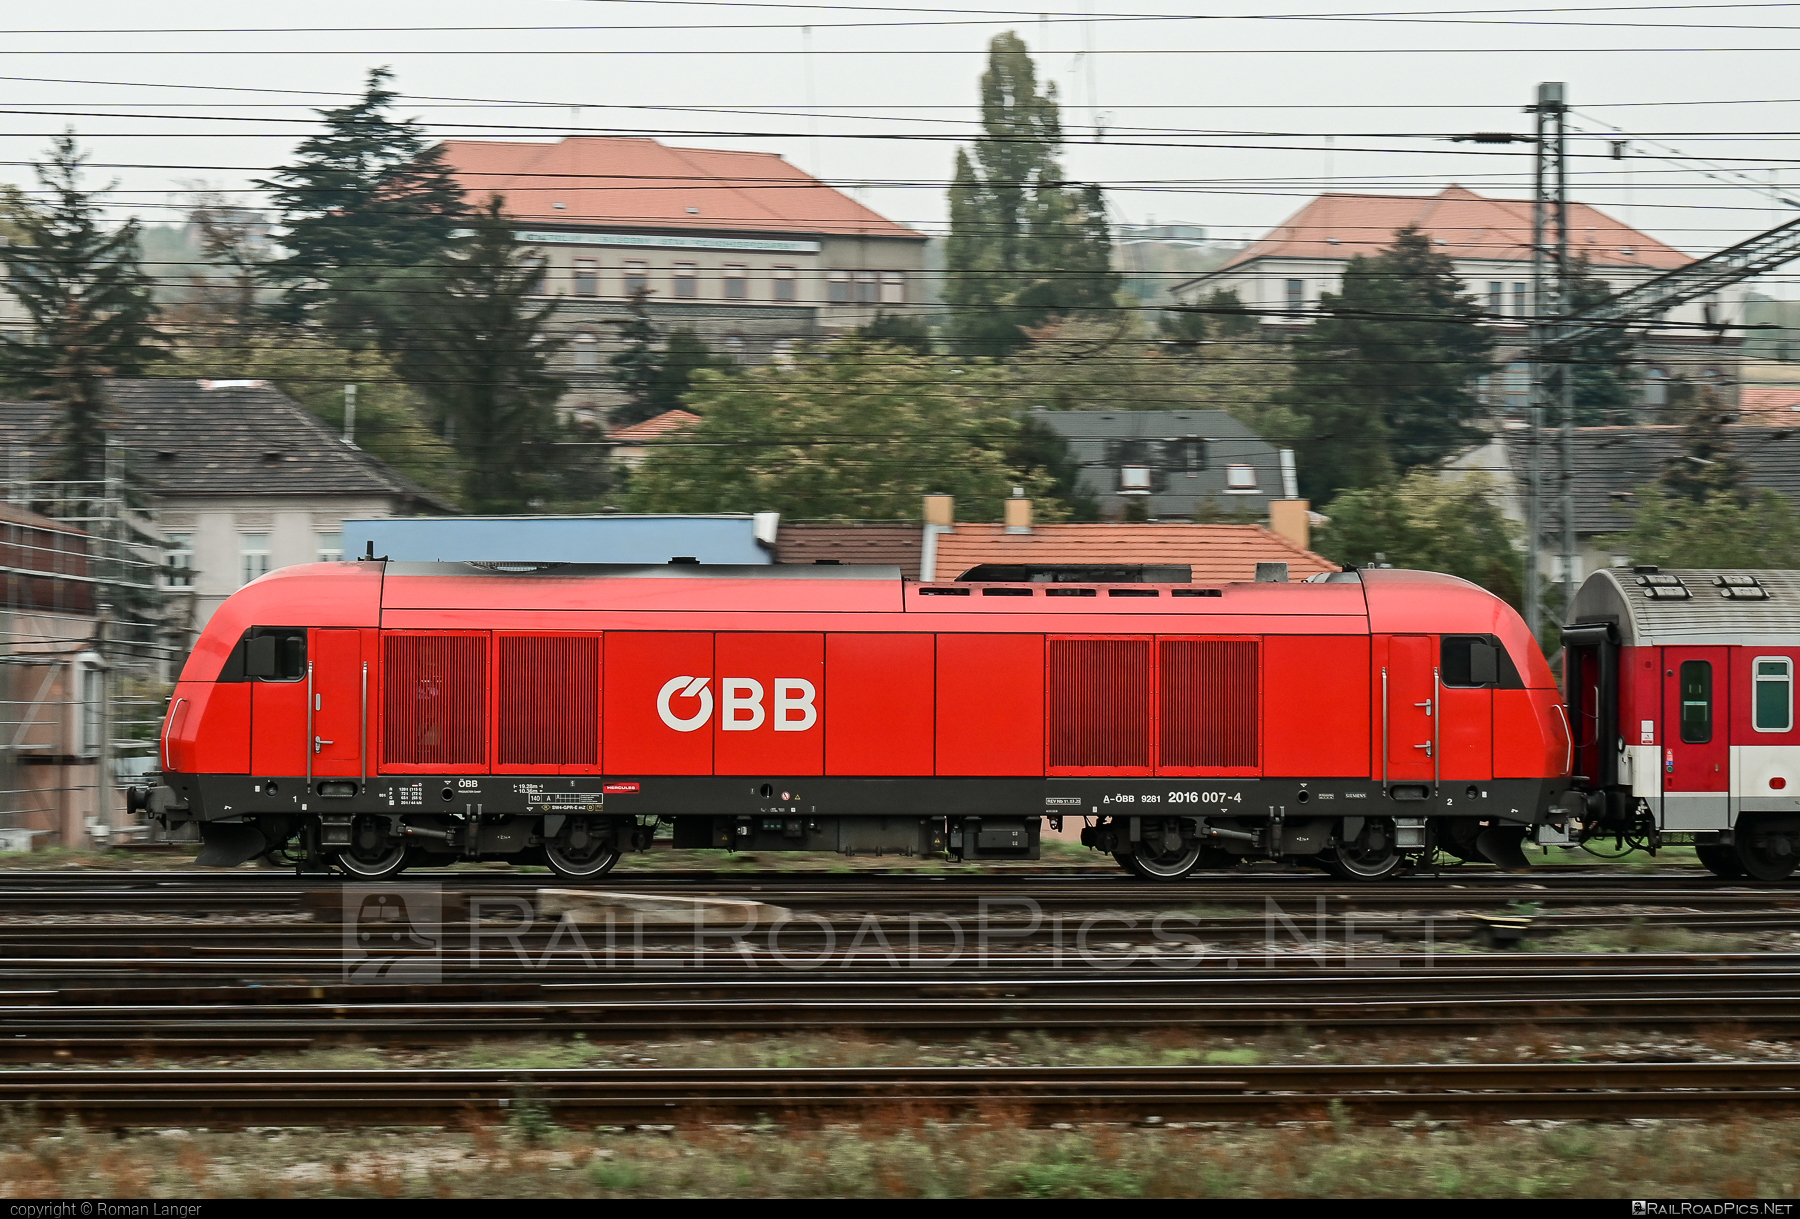 Siemens ER20 - 2016 007 operated by Österreichische Bundesbahnen #er20 #er20hercules #eurorunner #hercules #obb #osterreichischebundesbahnen #siemens #siemenser20 #siemenser20hercules #siemenseurorunner #siemenshercules